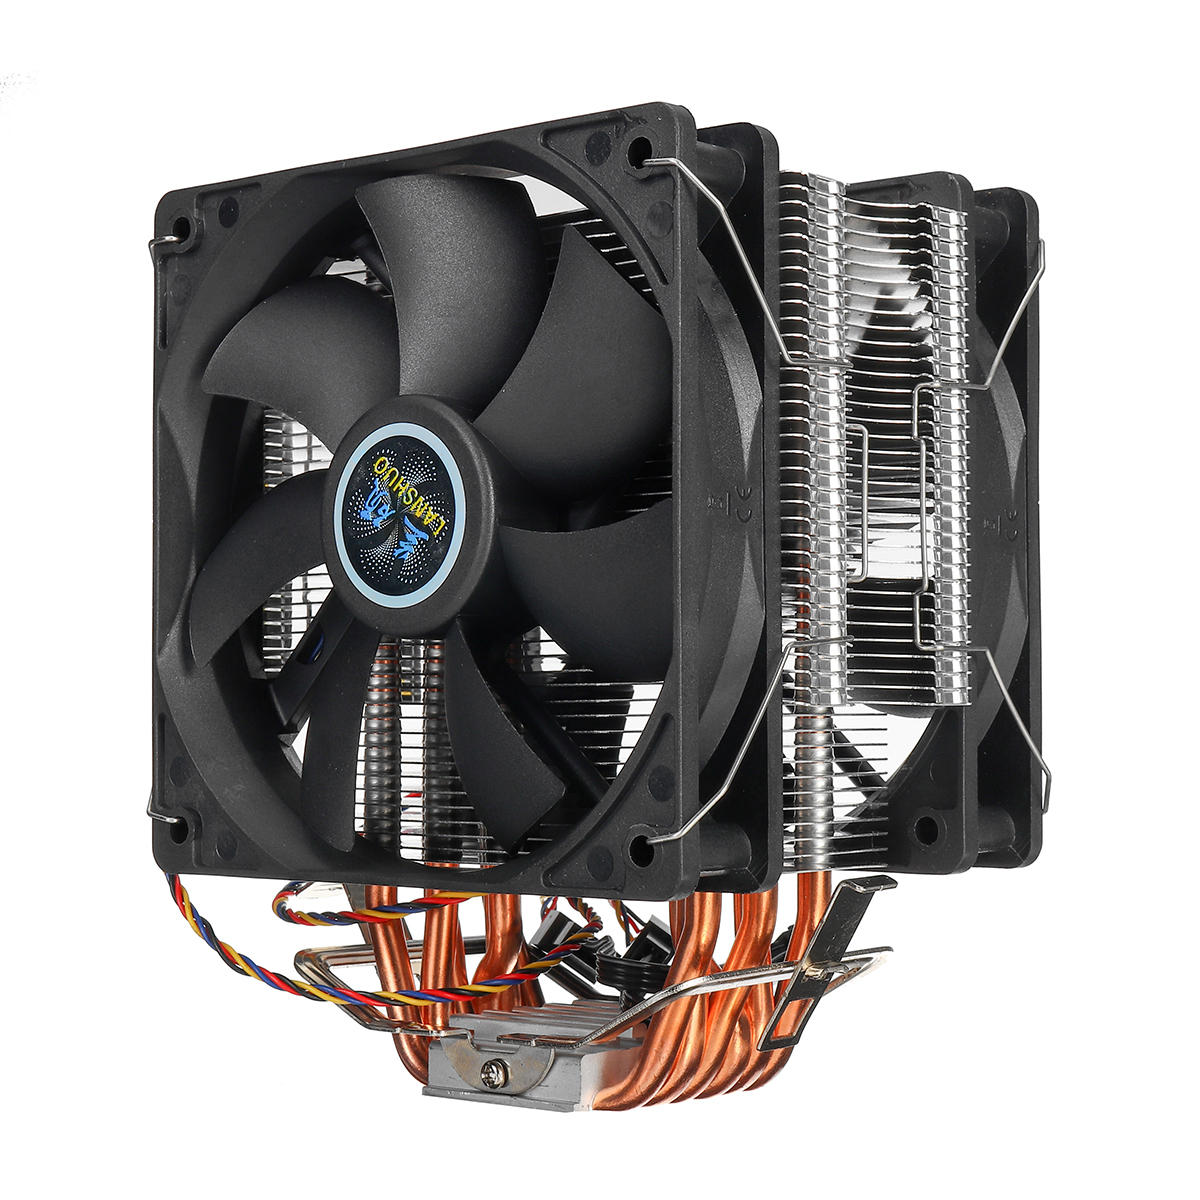 

3 Pin 2 Fan 4 Heatpipes CPU Cooling Fan Cooler Heatsink for Intel 775 1150 1151 AMD